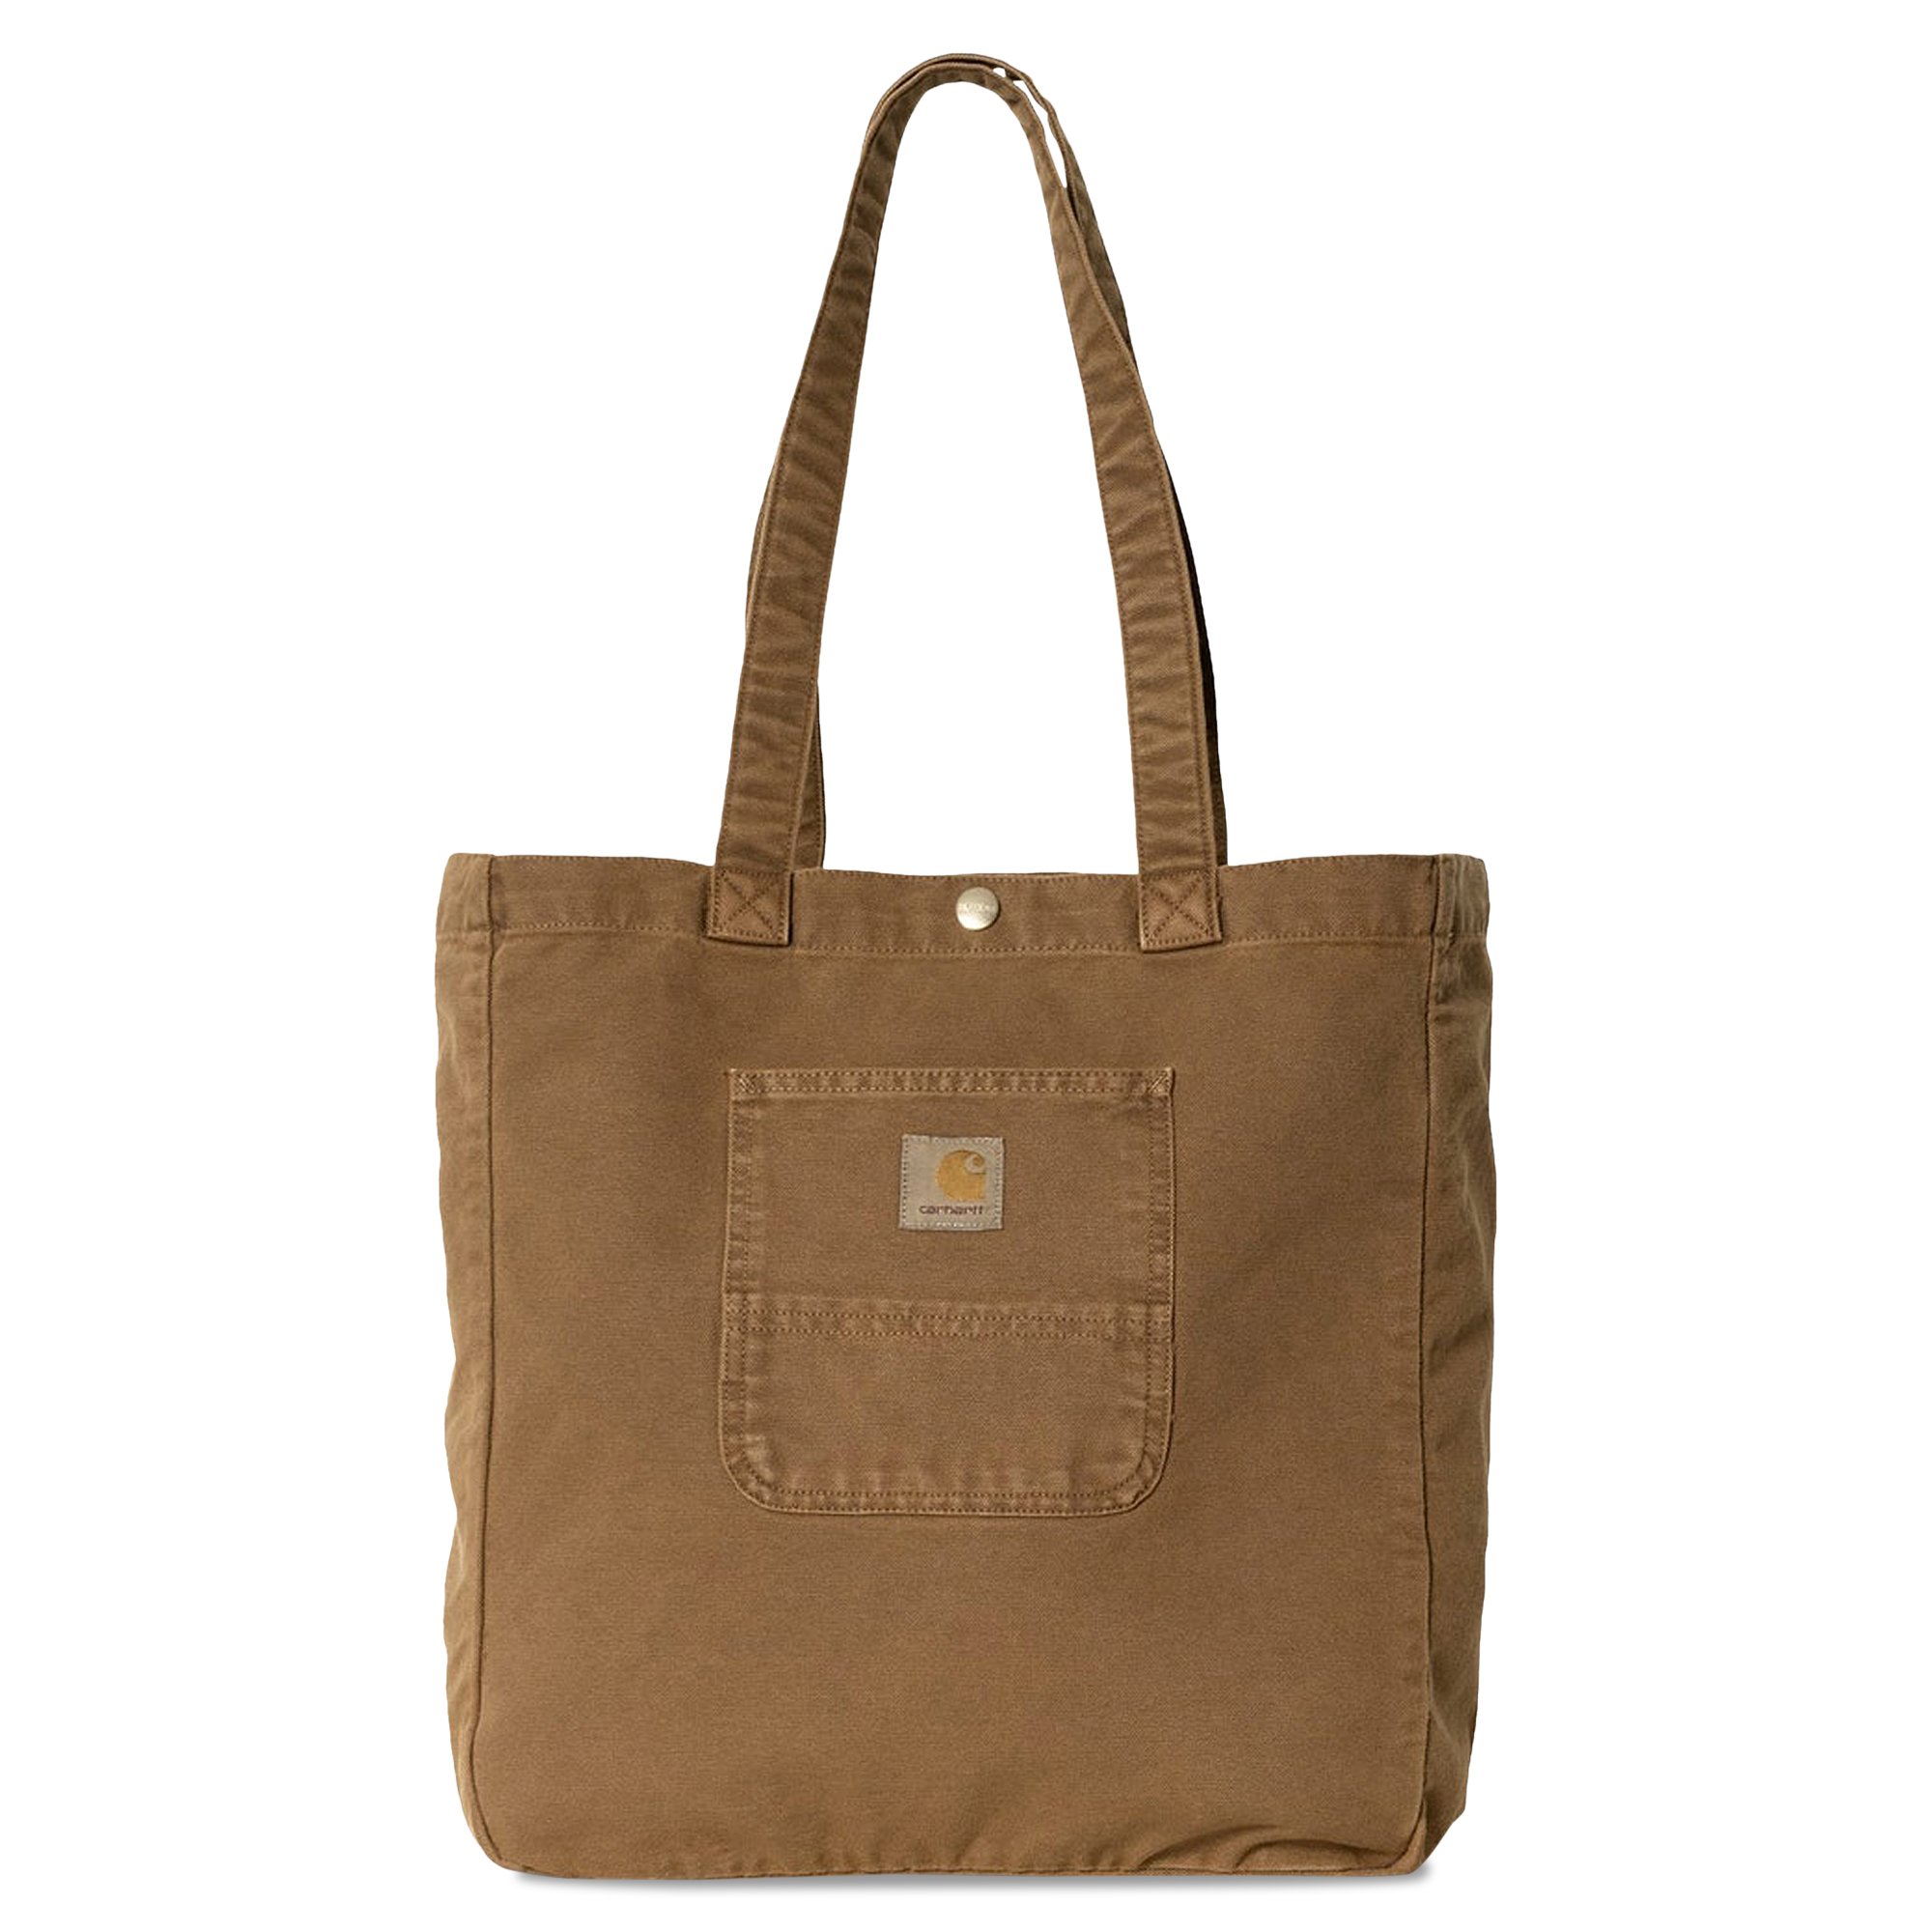 Buy Carhartt WIP Bayfield Tote Bag 'Tamarind' - I031403 TAMA | GOAT